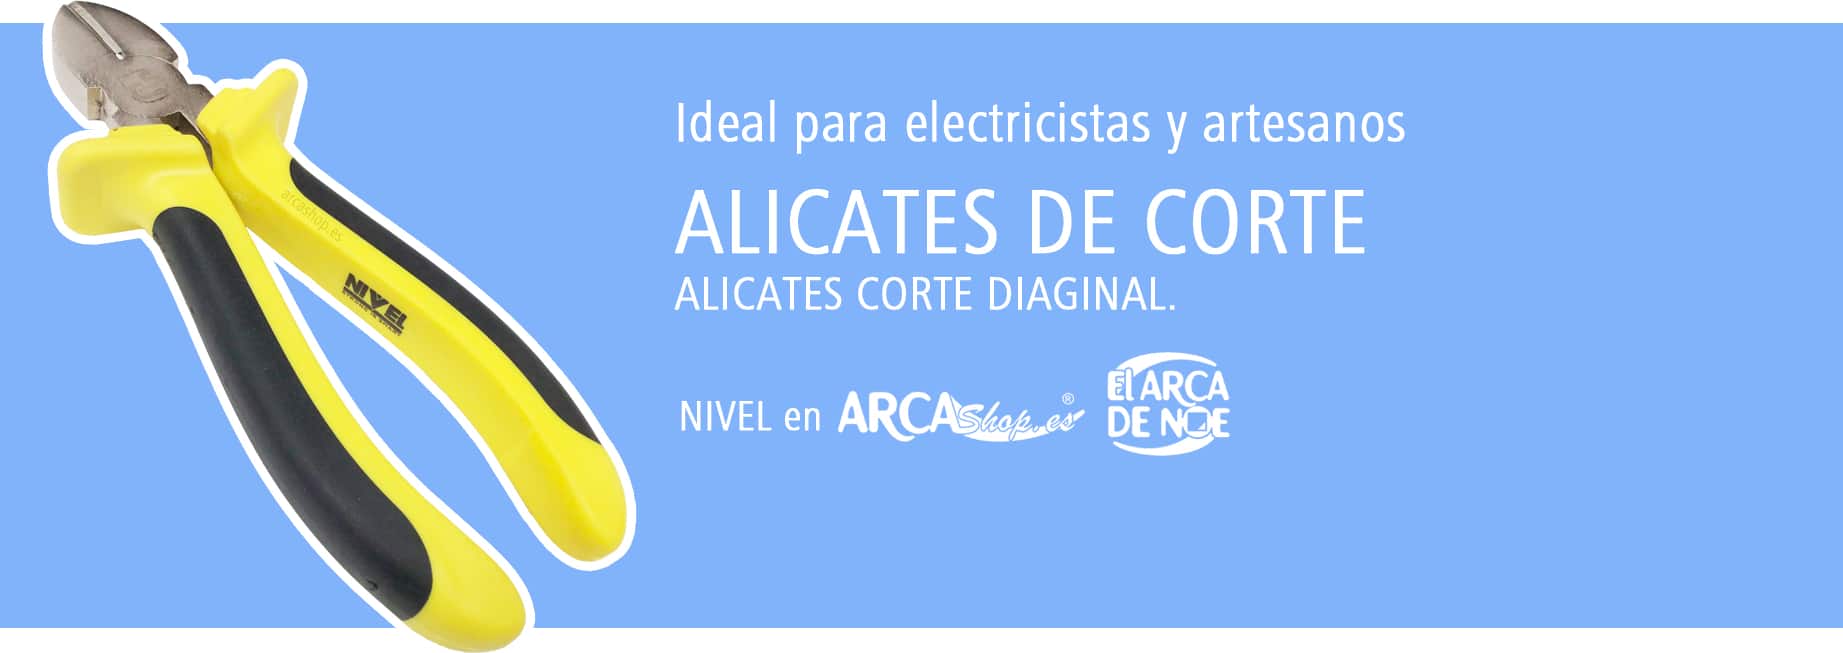 Alicate Corte Diagonal. Artesanos, electricista, tapiceros, etc.